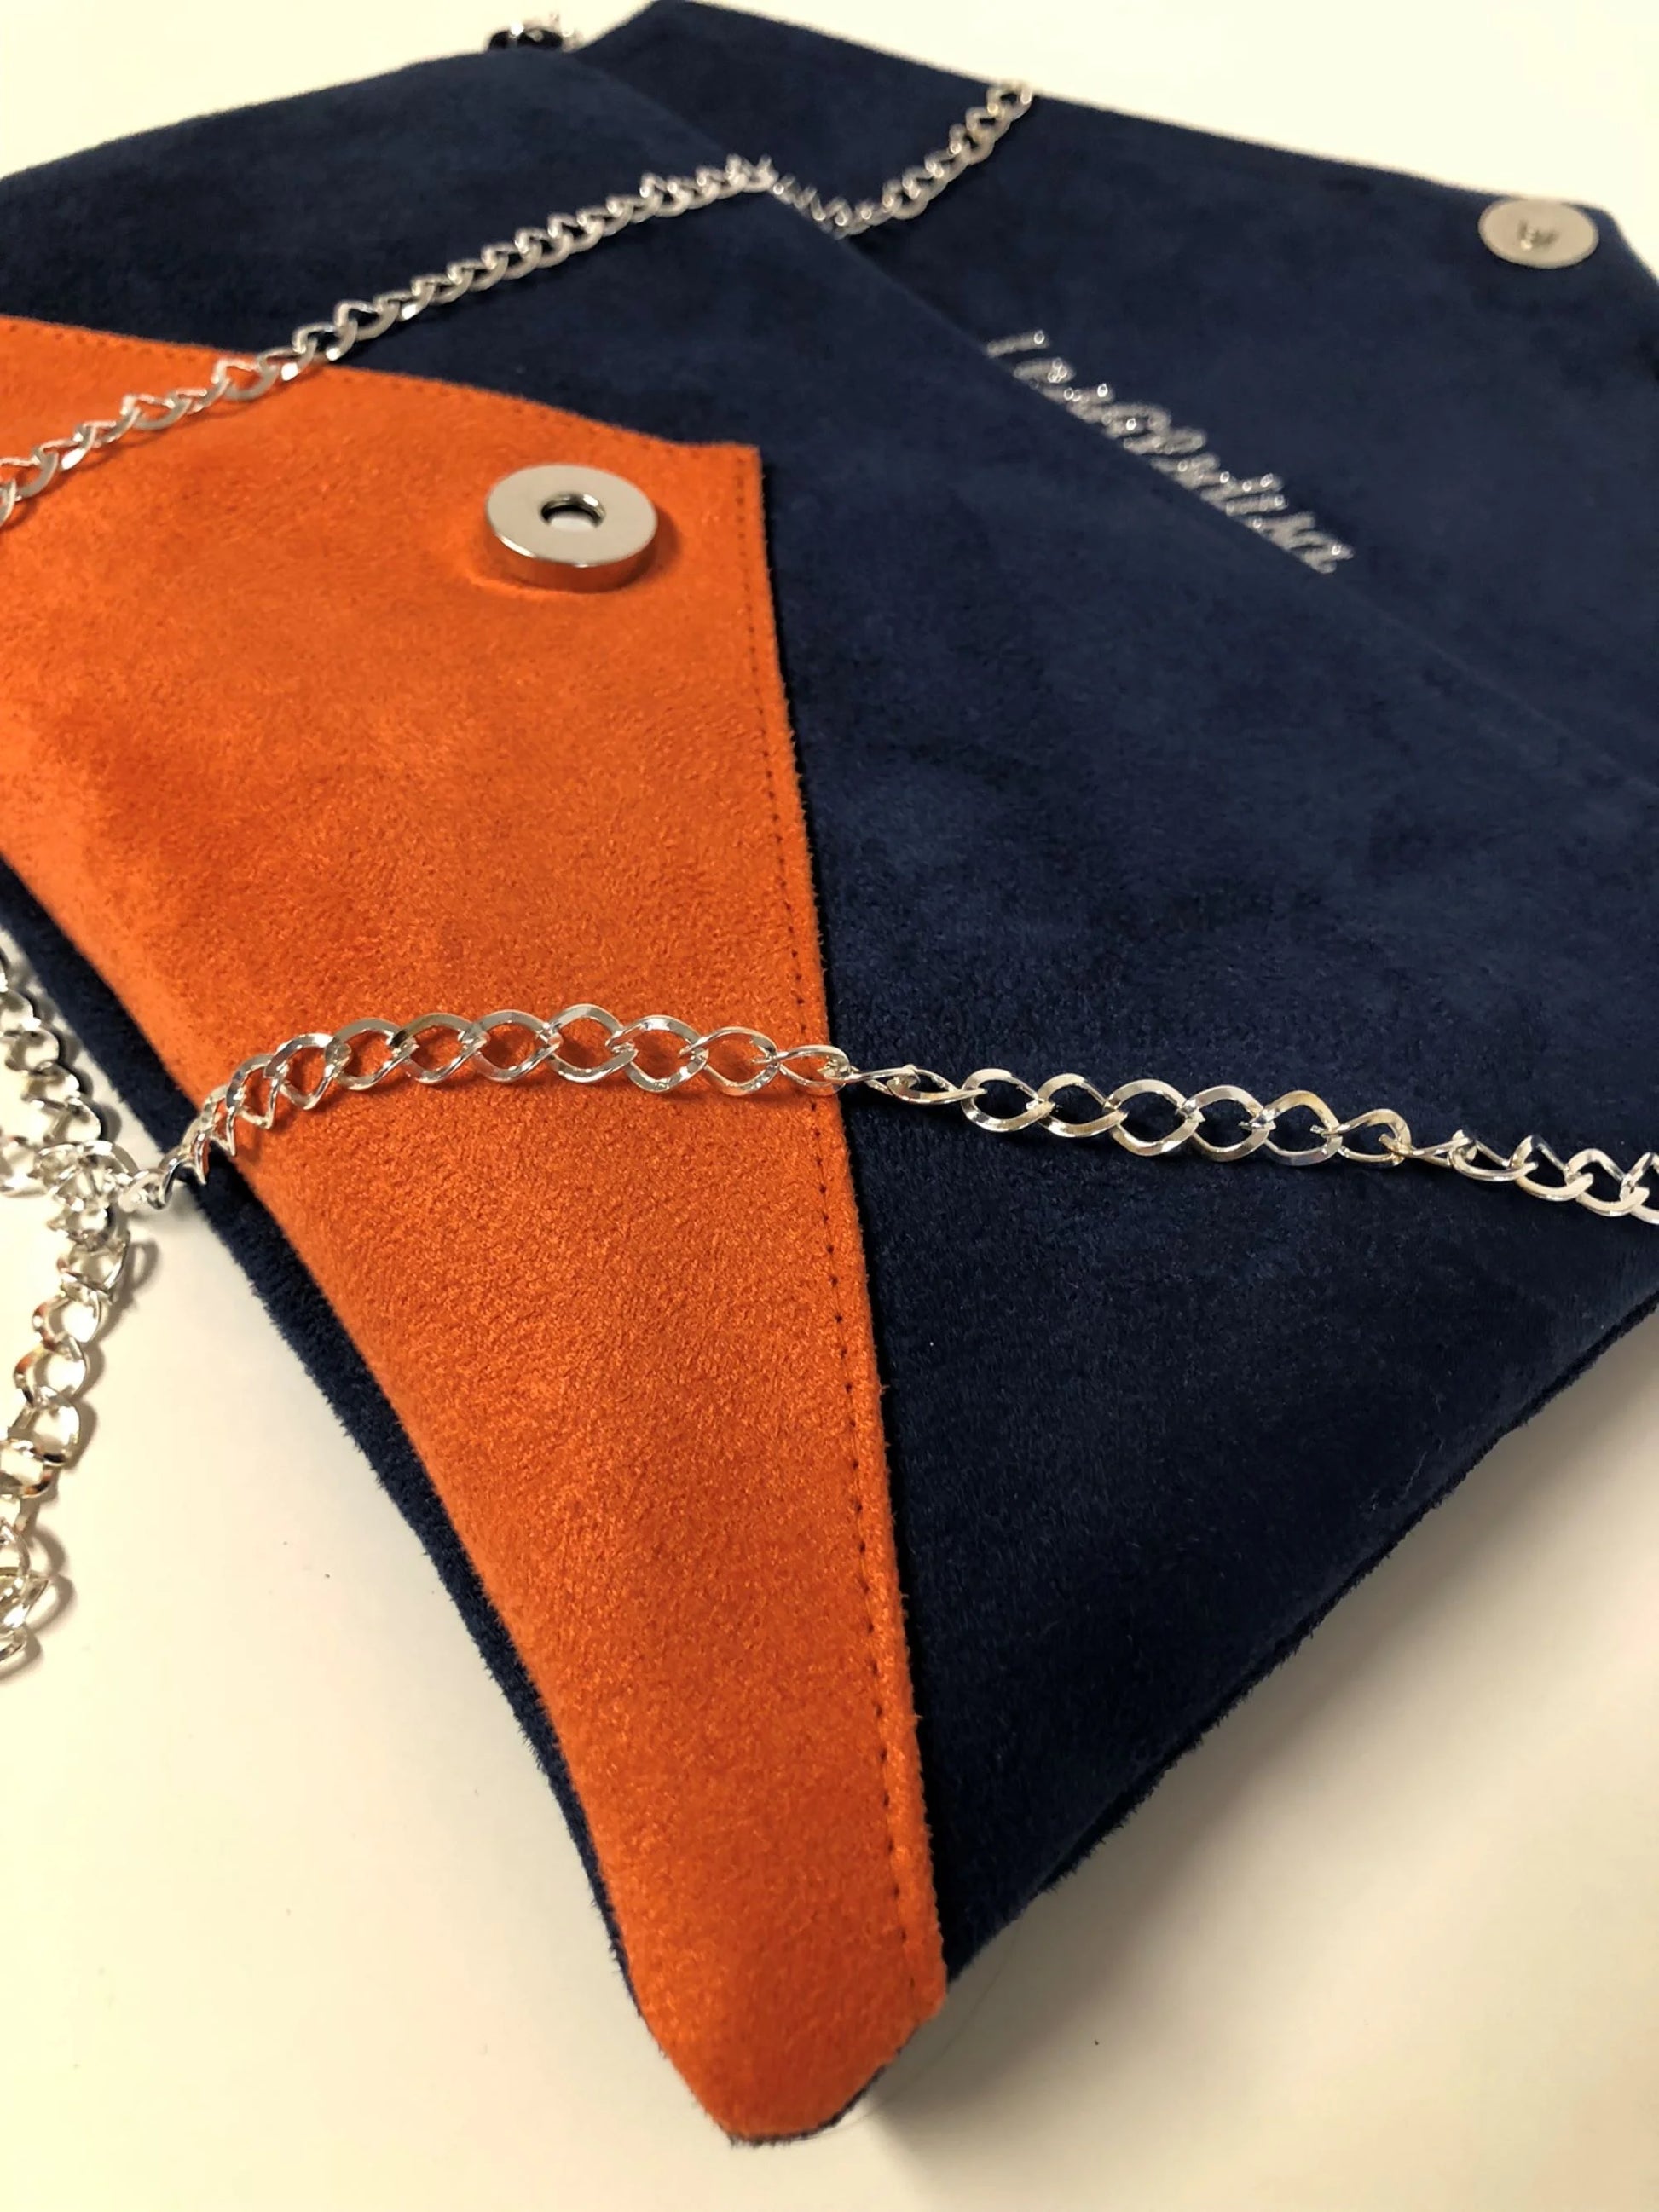 Vue détaillée du sac pochette Isa bleu marine et orange à paillettes argentées, avec chainette amovible.